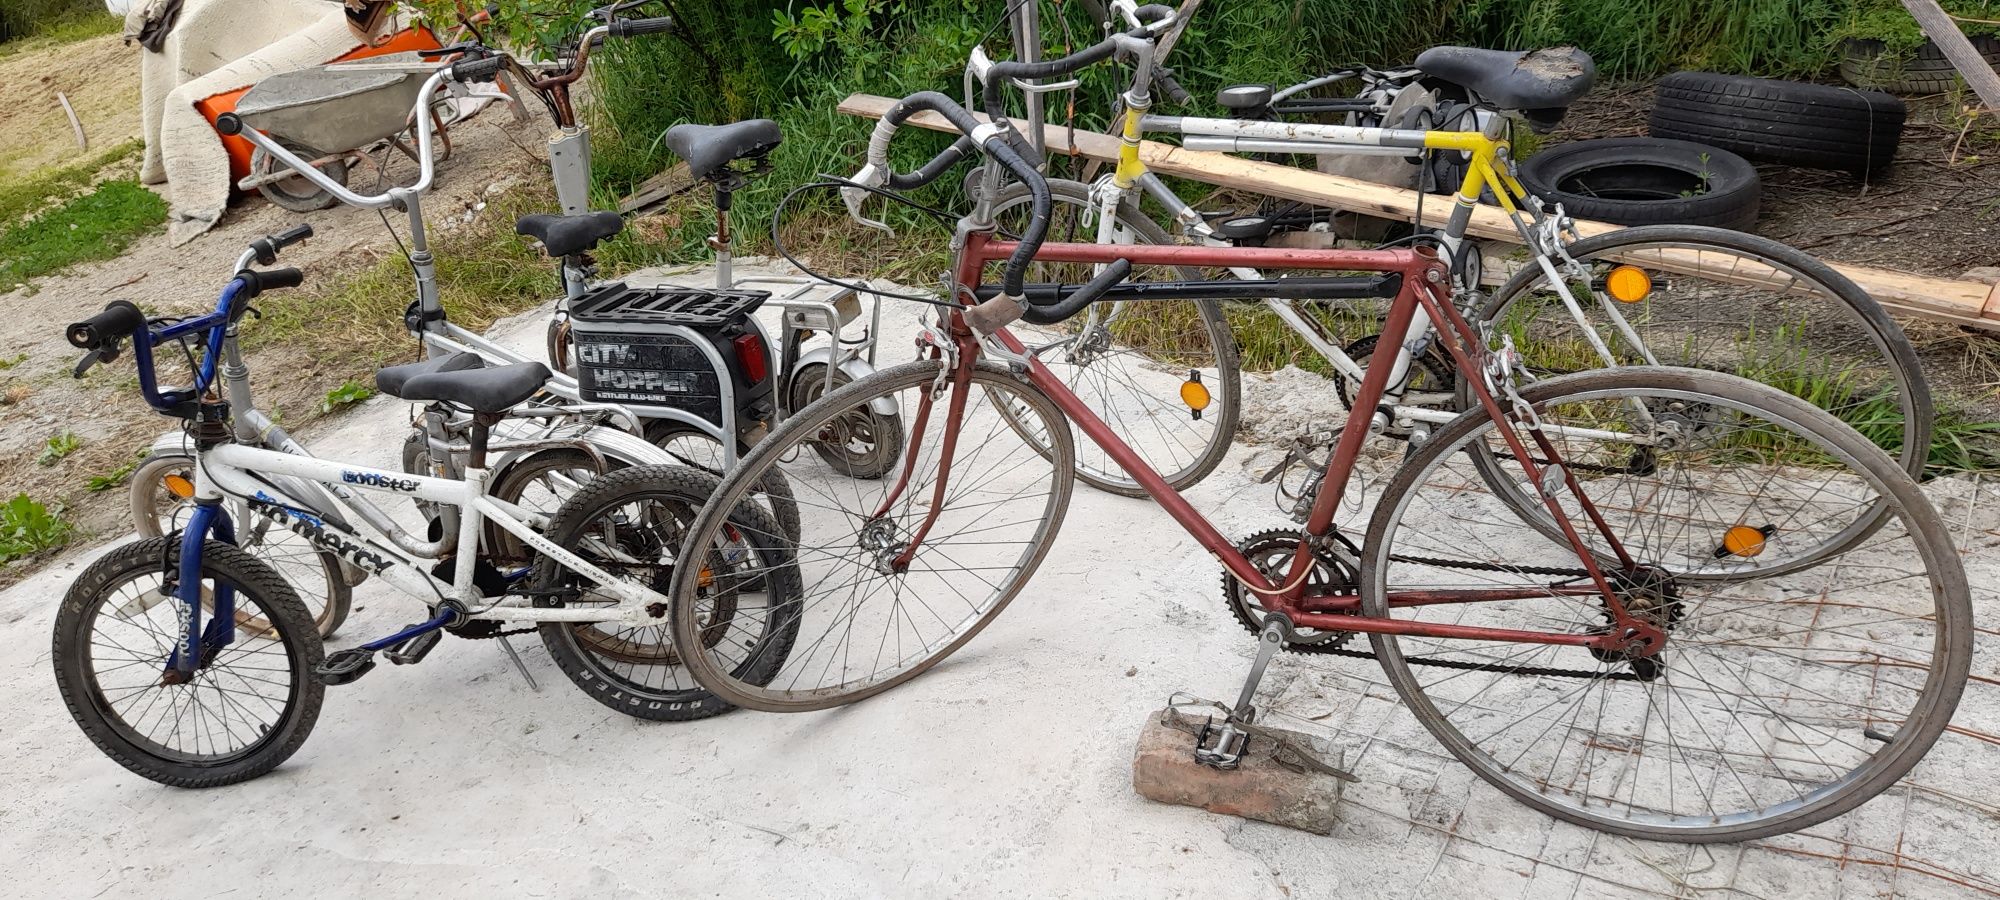 SCOTT Contesa originale  ..Biciclete retro vintage..